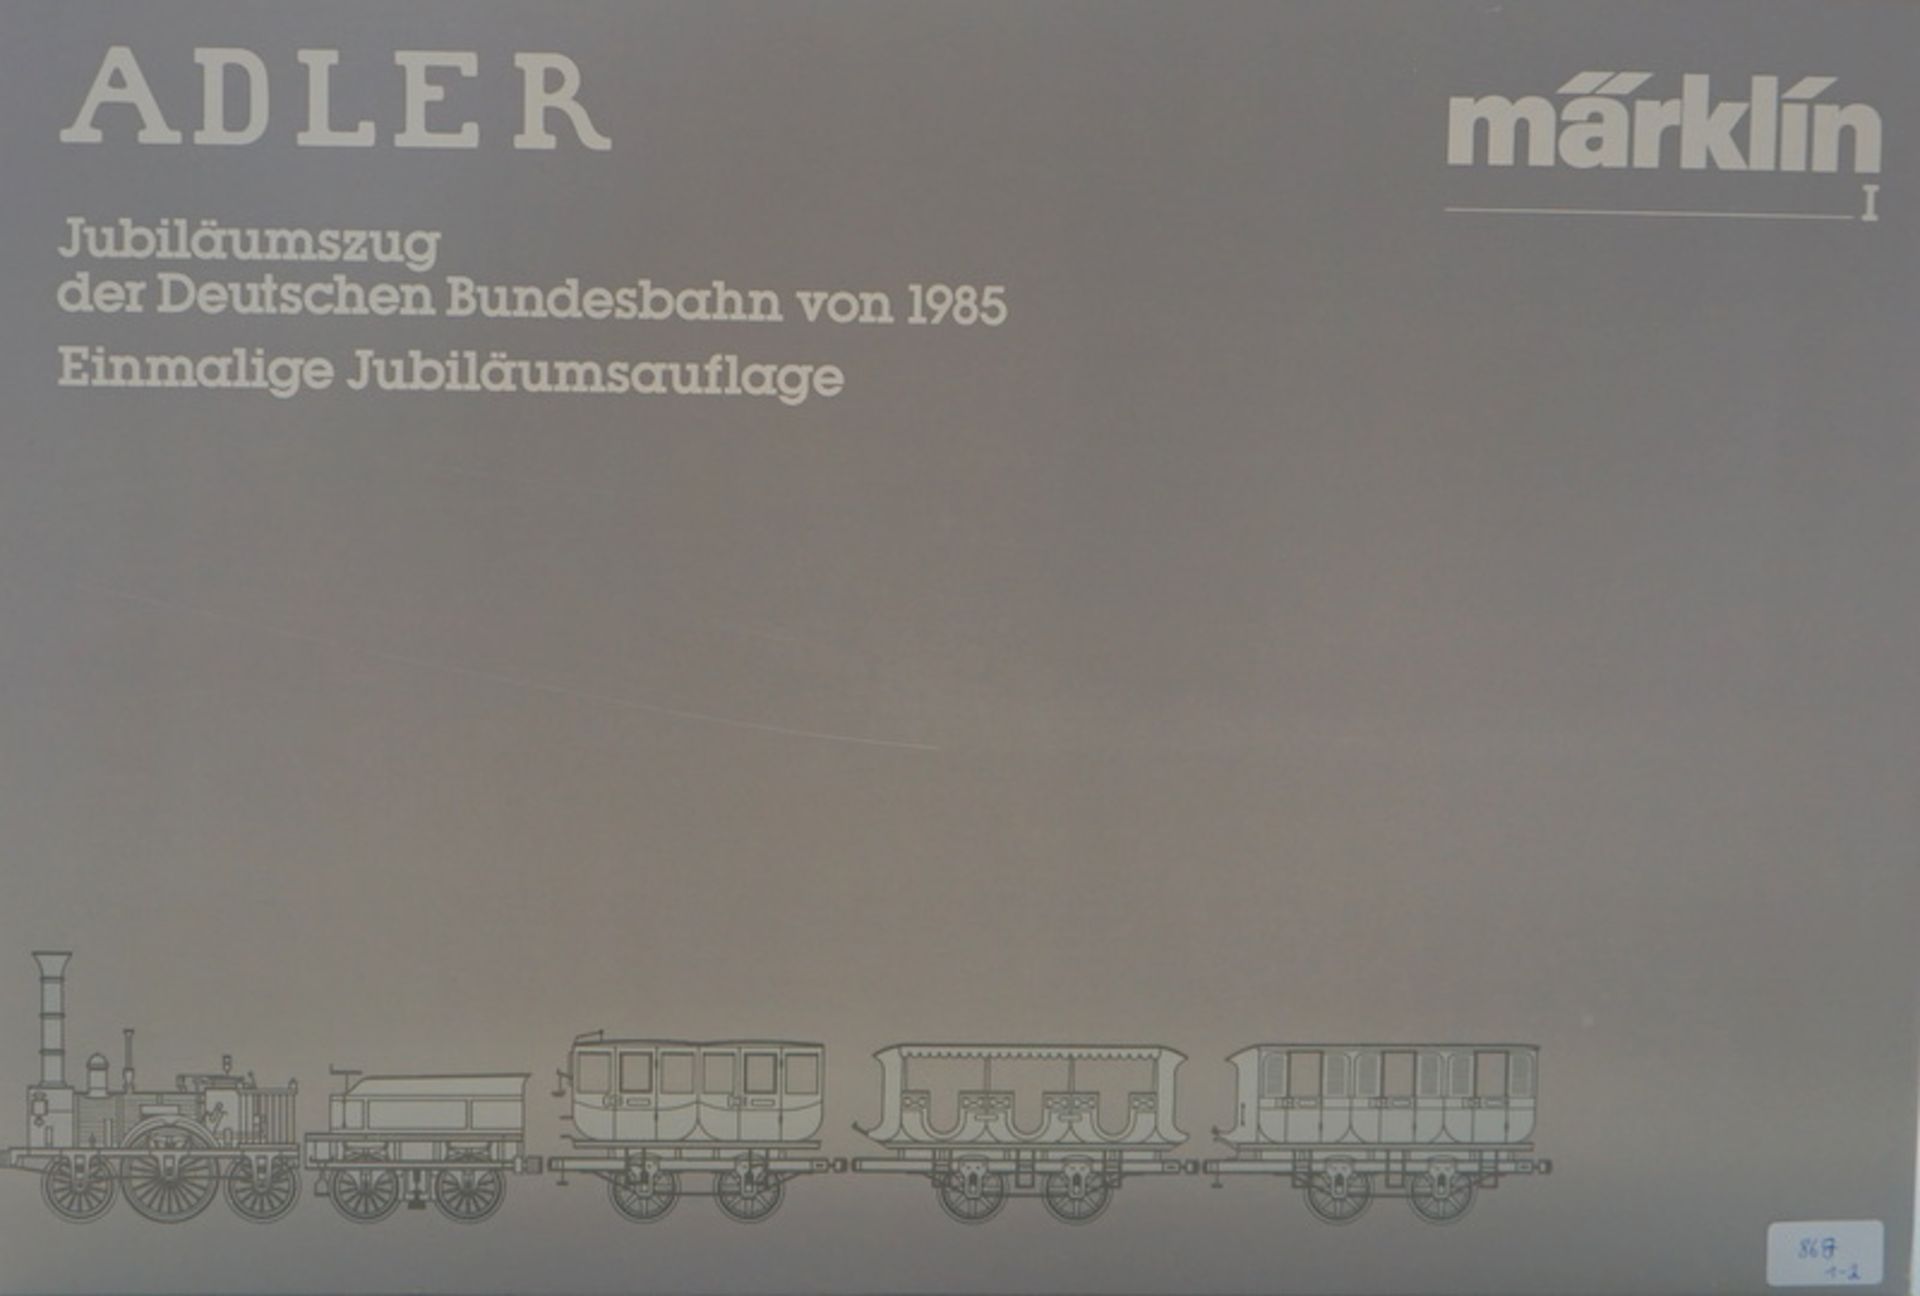 Märklin ab 1954, Gebr. Märklin & Cie., G.m.b.H. Göppingen: 5751 Spur1 AC Dampflok Adler + 4 Wagen Ju